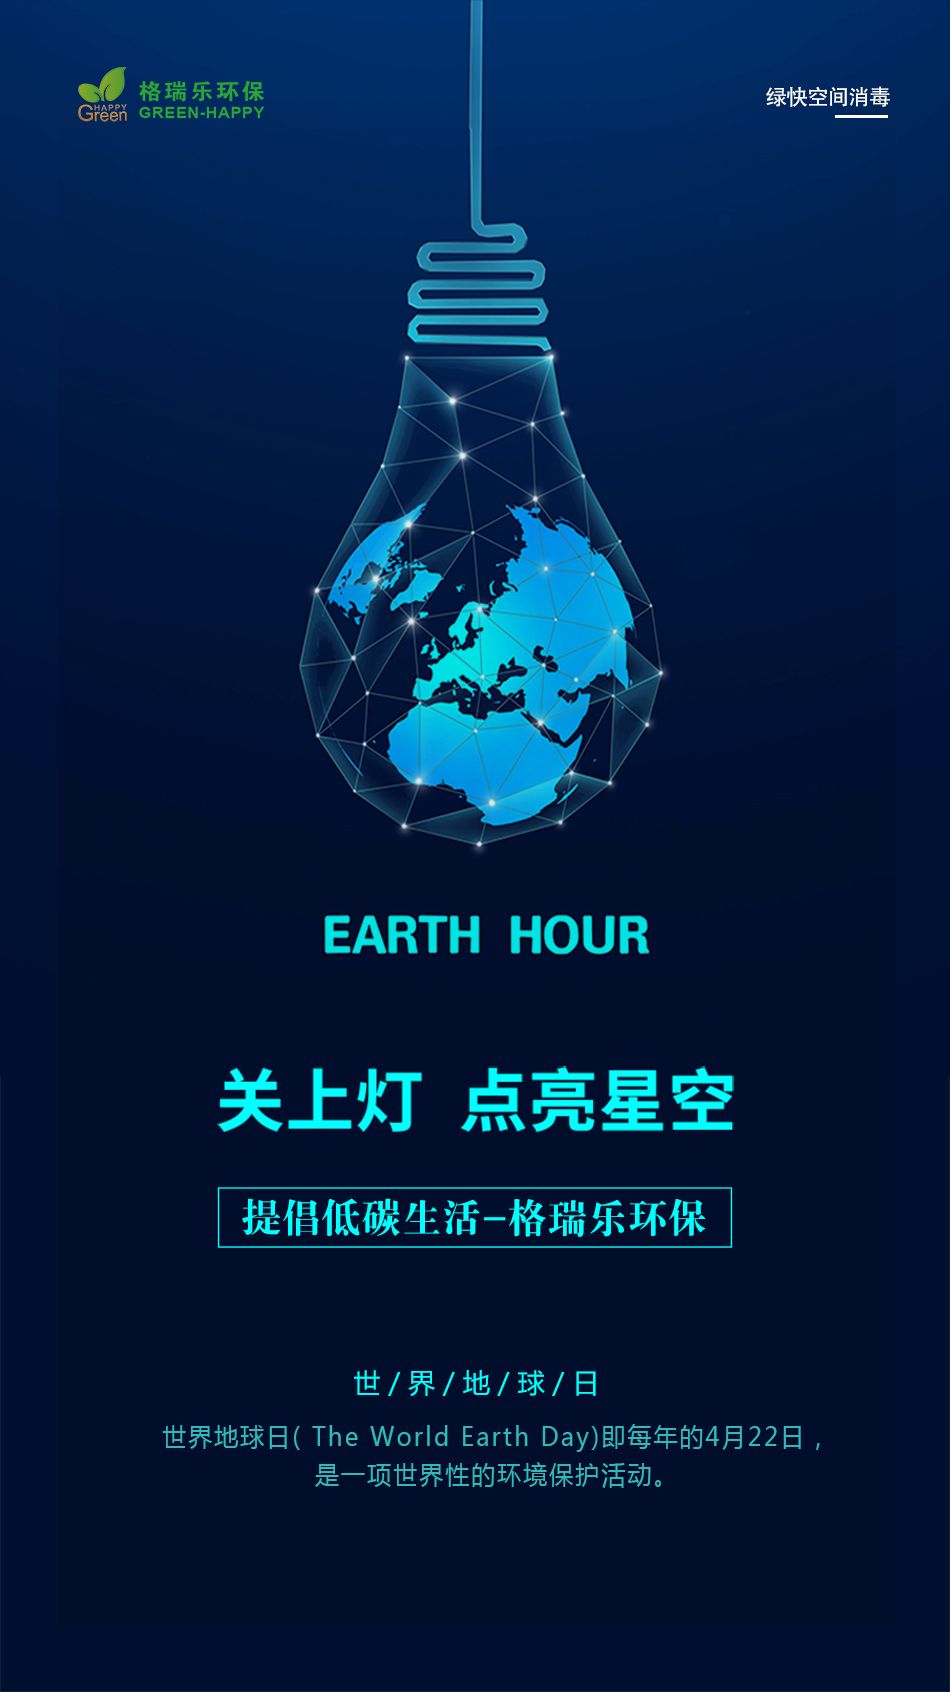 世界地球日,保护环境,气候变化,环境问题,盈彩(中国)股份有限公司-官网